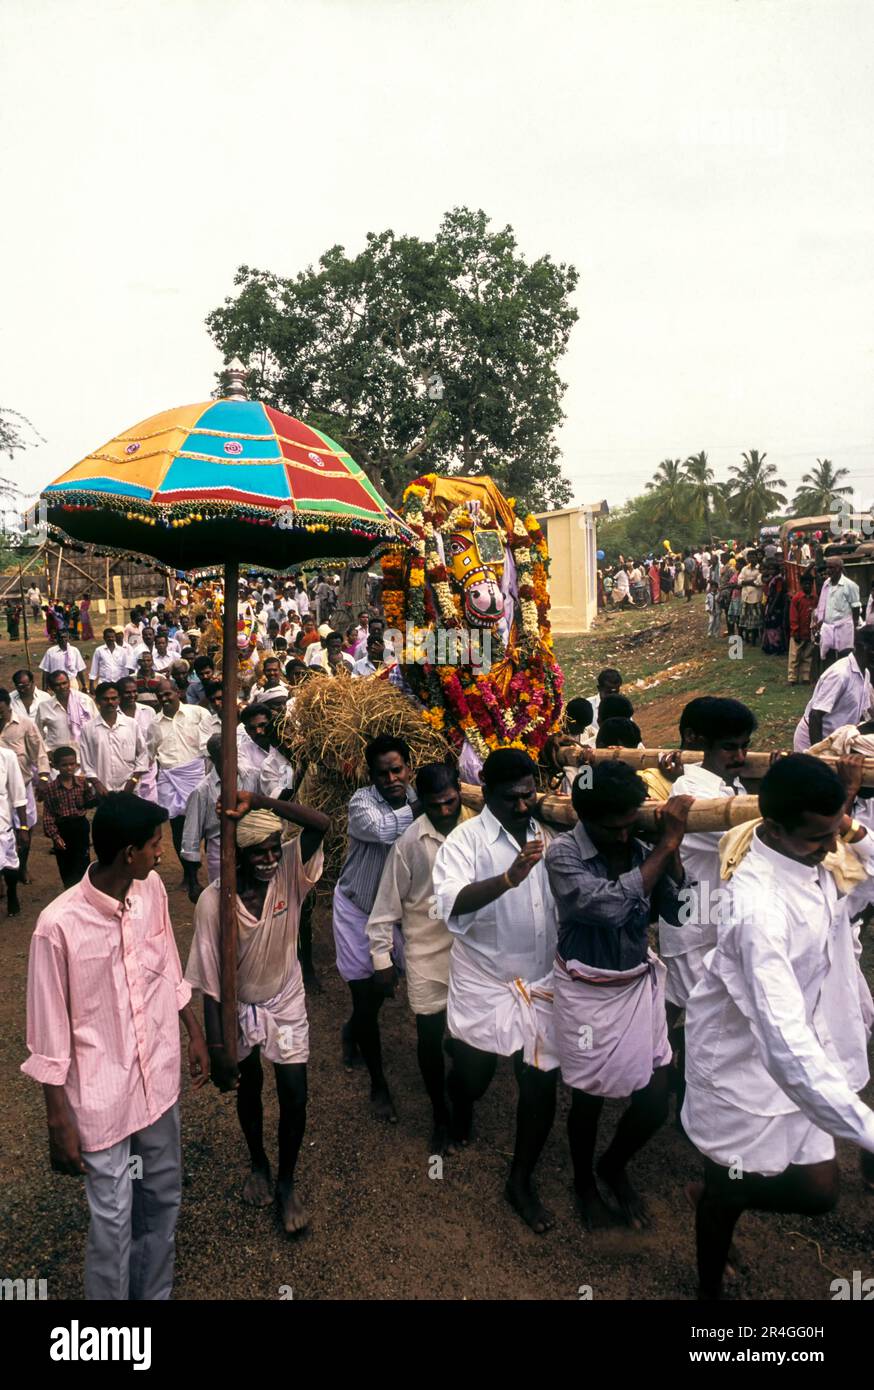 Villageois transportant des chevaux en terre cuite pendant le festival Puravi Eduppu, Tamil Nadu, Inde, Asie Banque D'Images